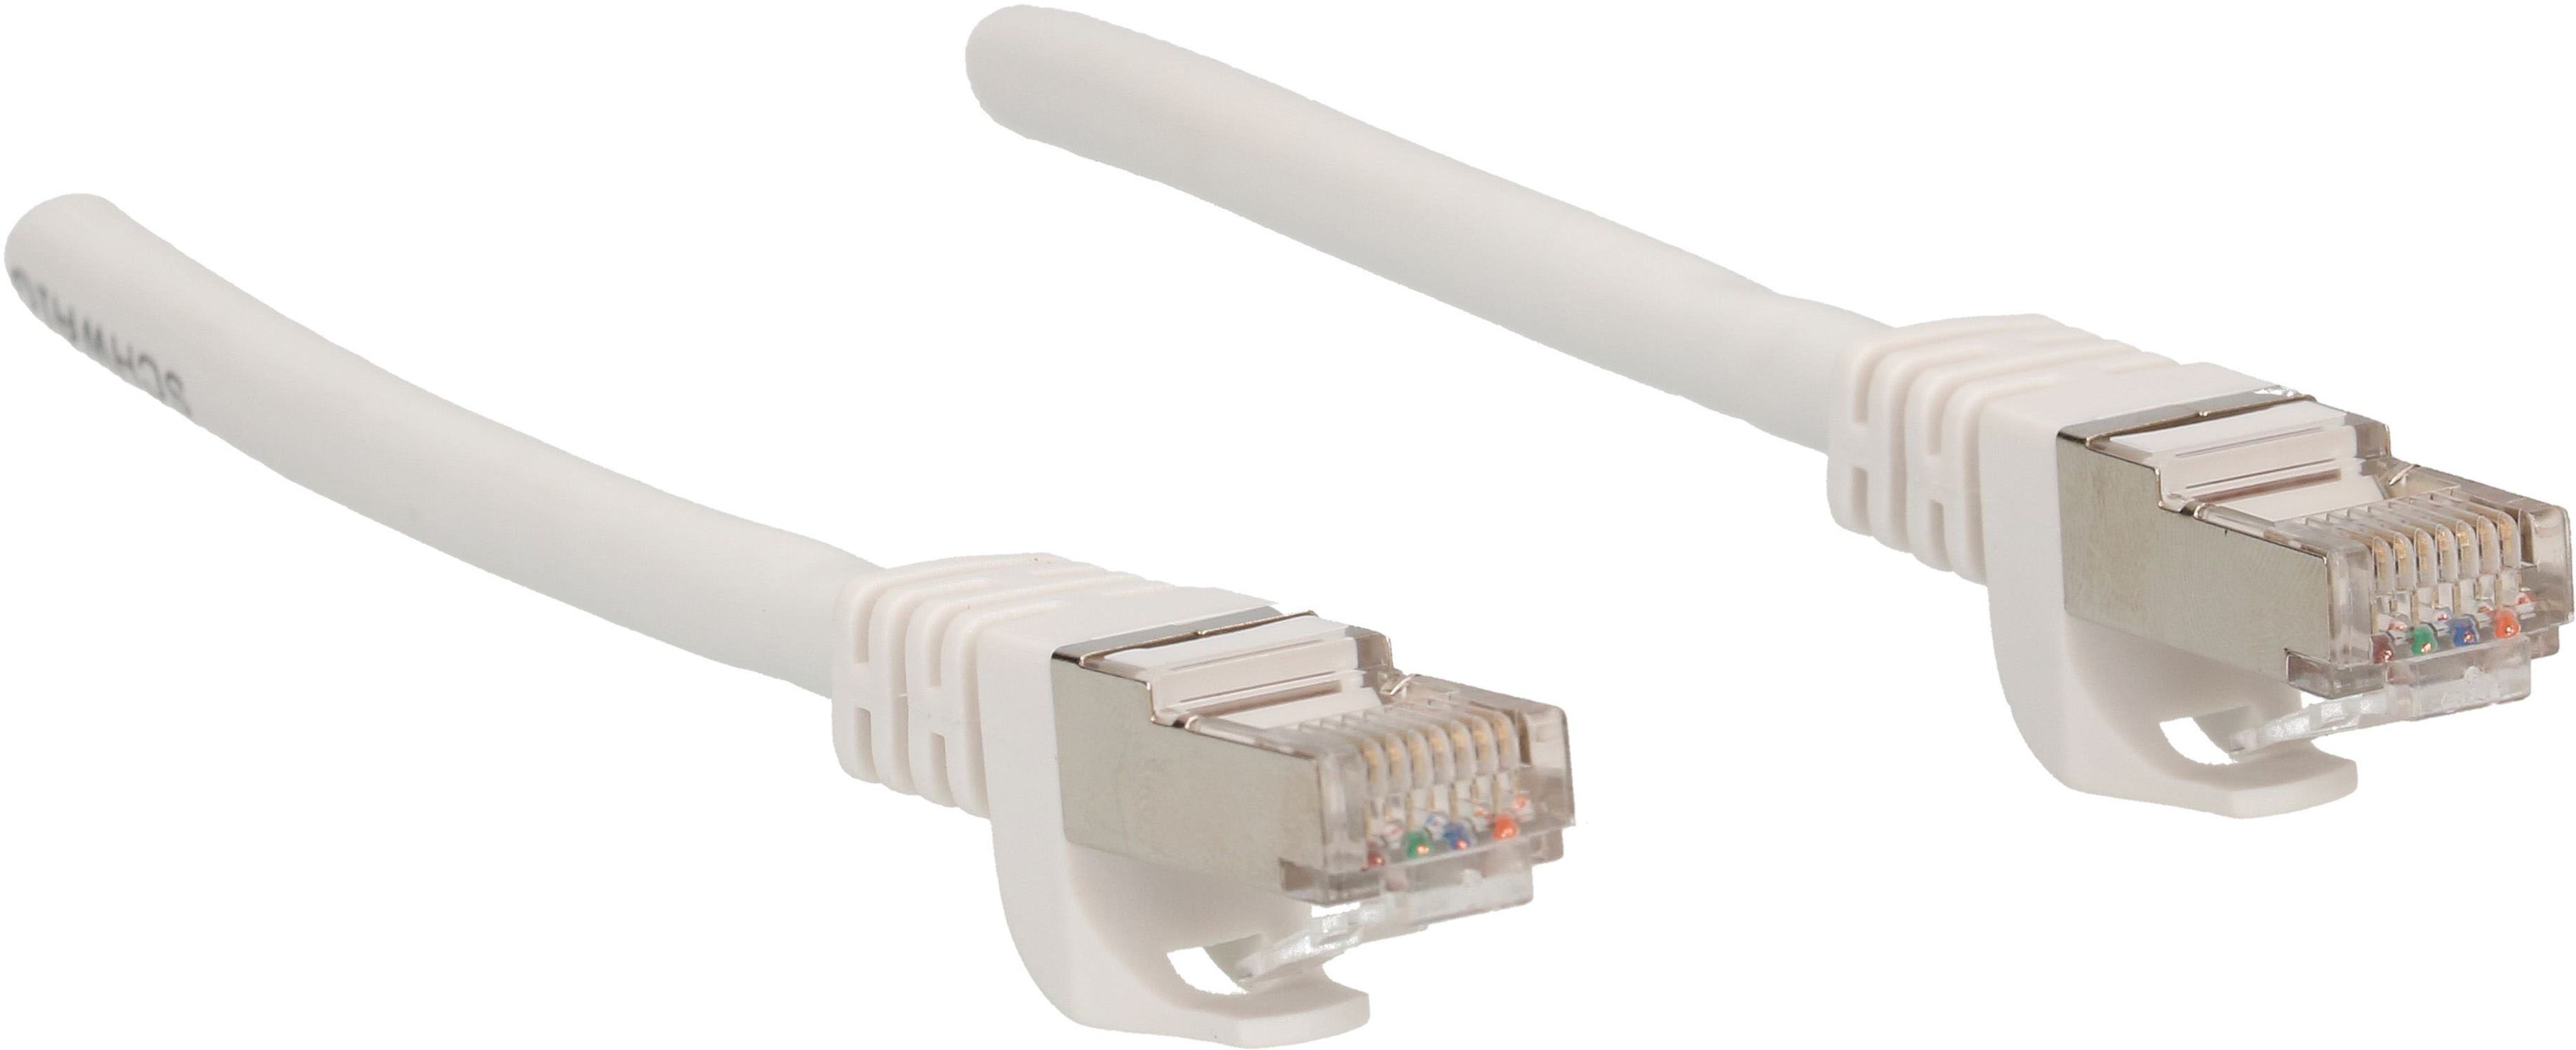 Câble réseau Cat. 6 S/FTP 0.5m blanc